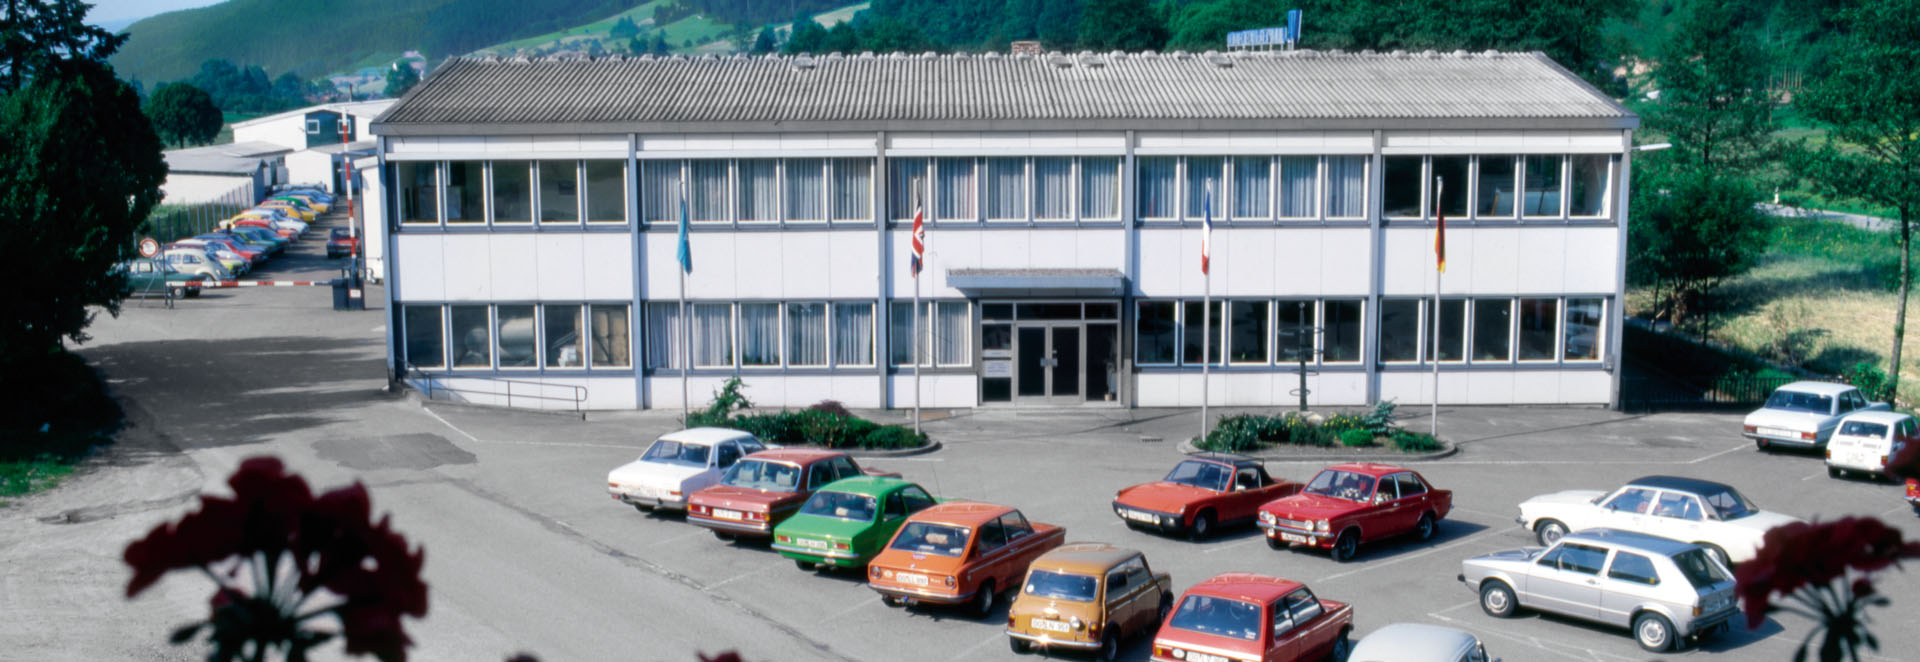 Исполняется 60 лет компании Erwin Junker Maschinenfabrik GmbH